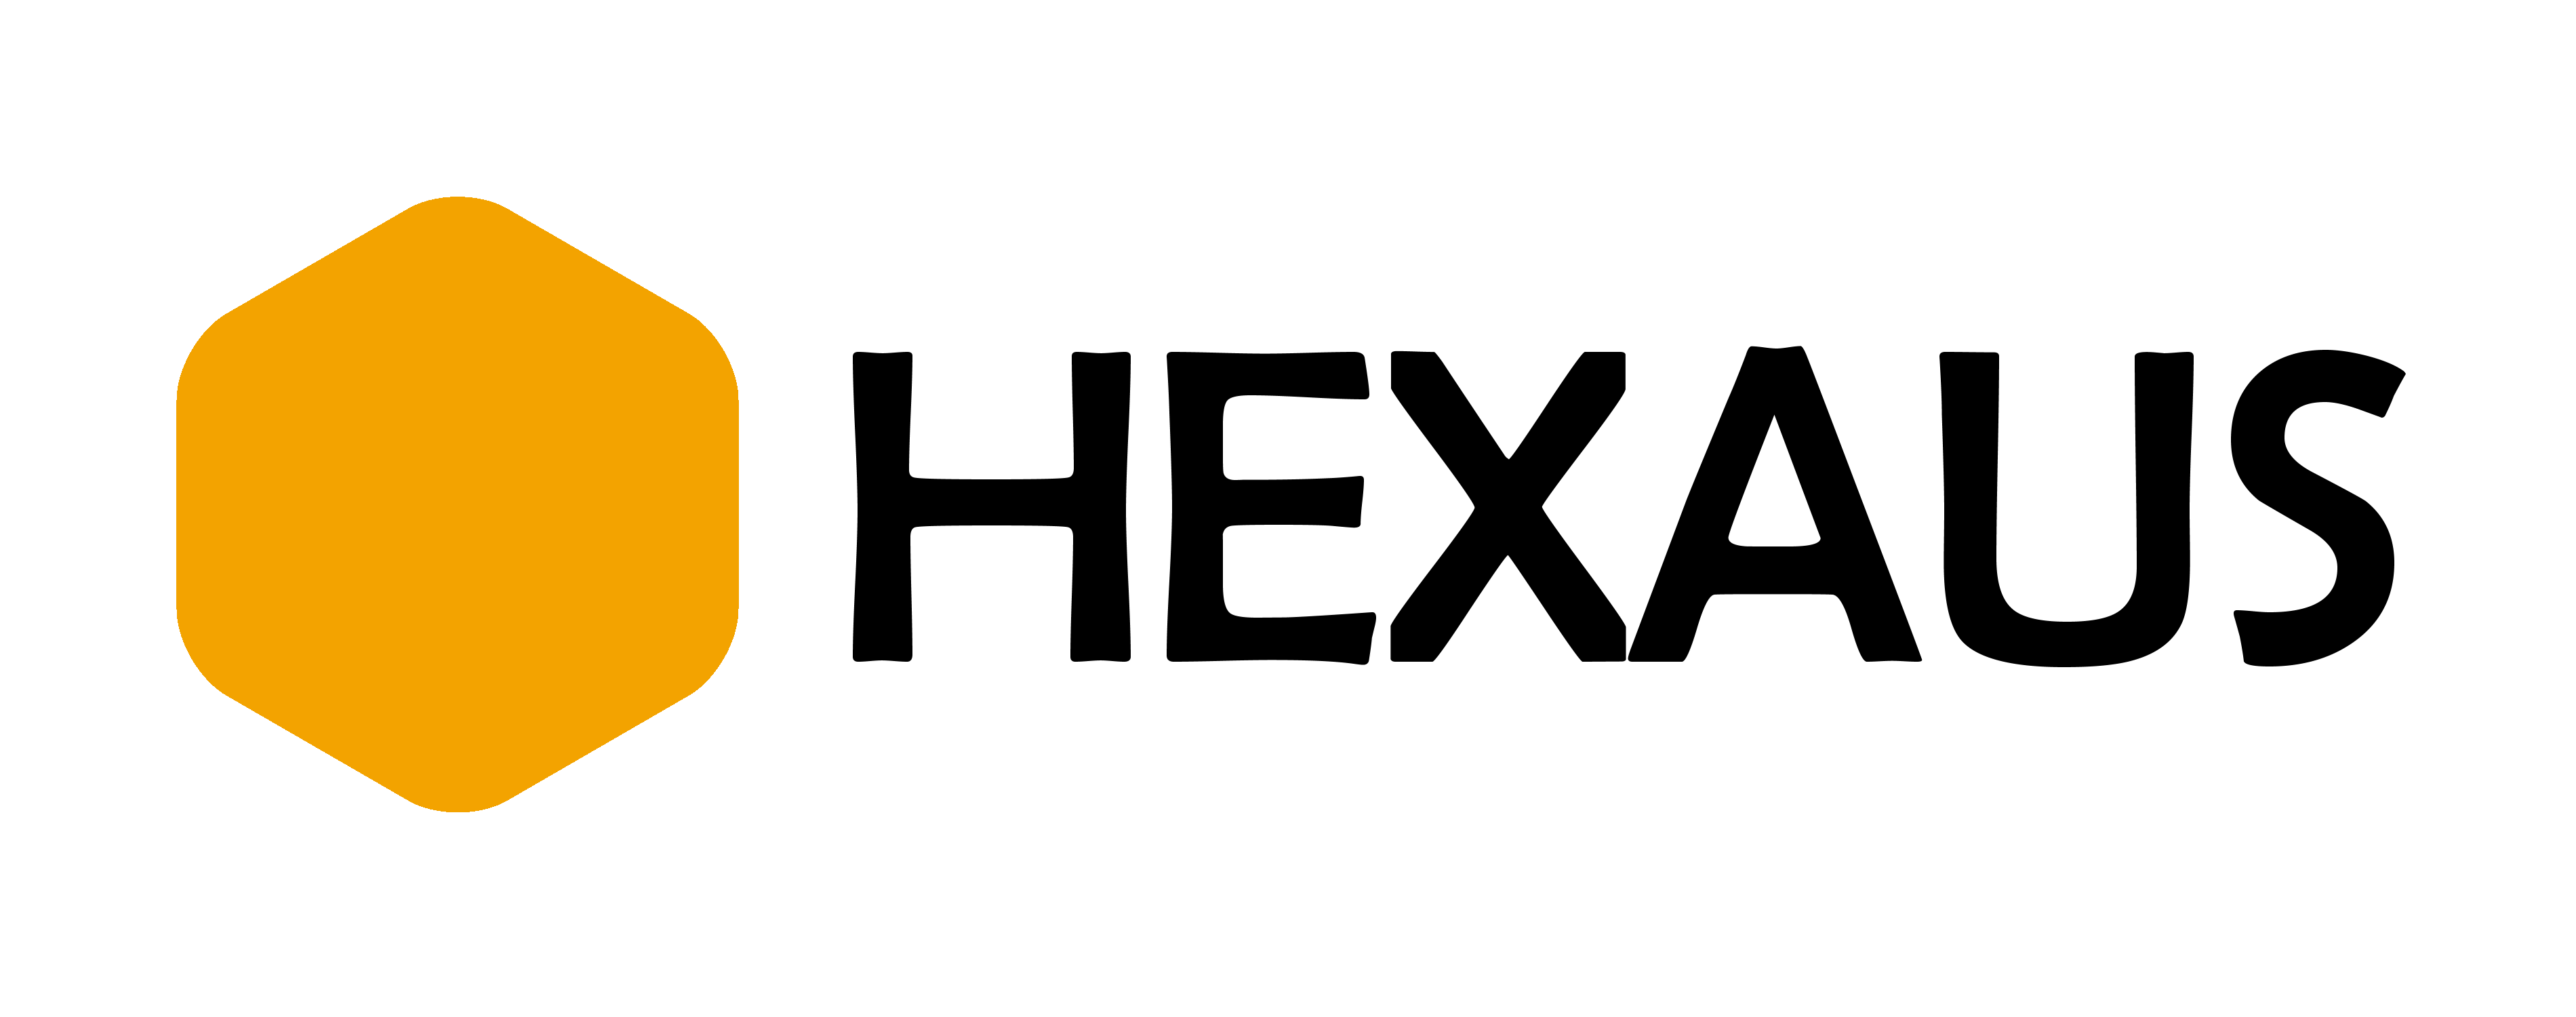 Bisecu logo image